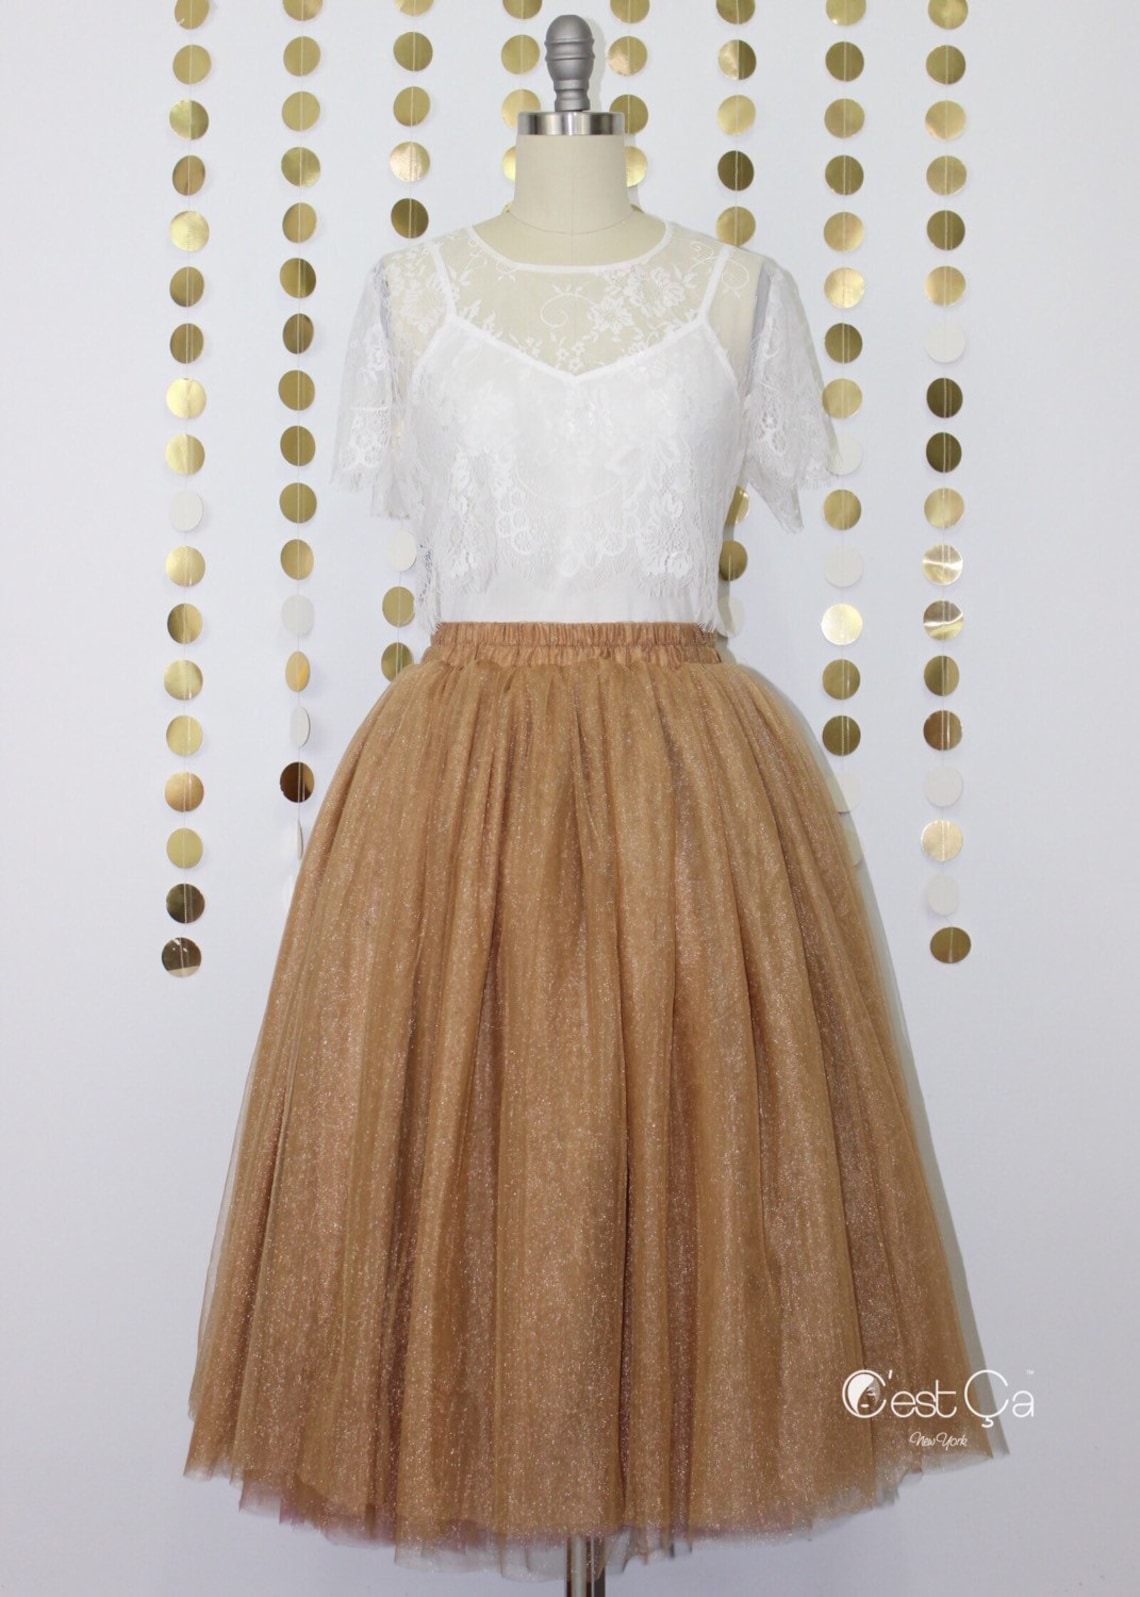 Diane Metallic Tulle Skirt Antique Gold Tulle Skirt Copper | Etsy